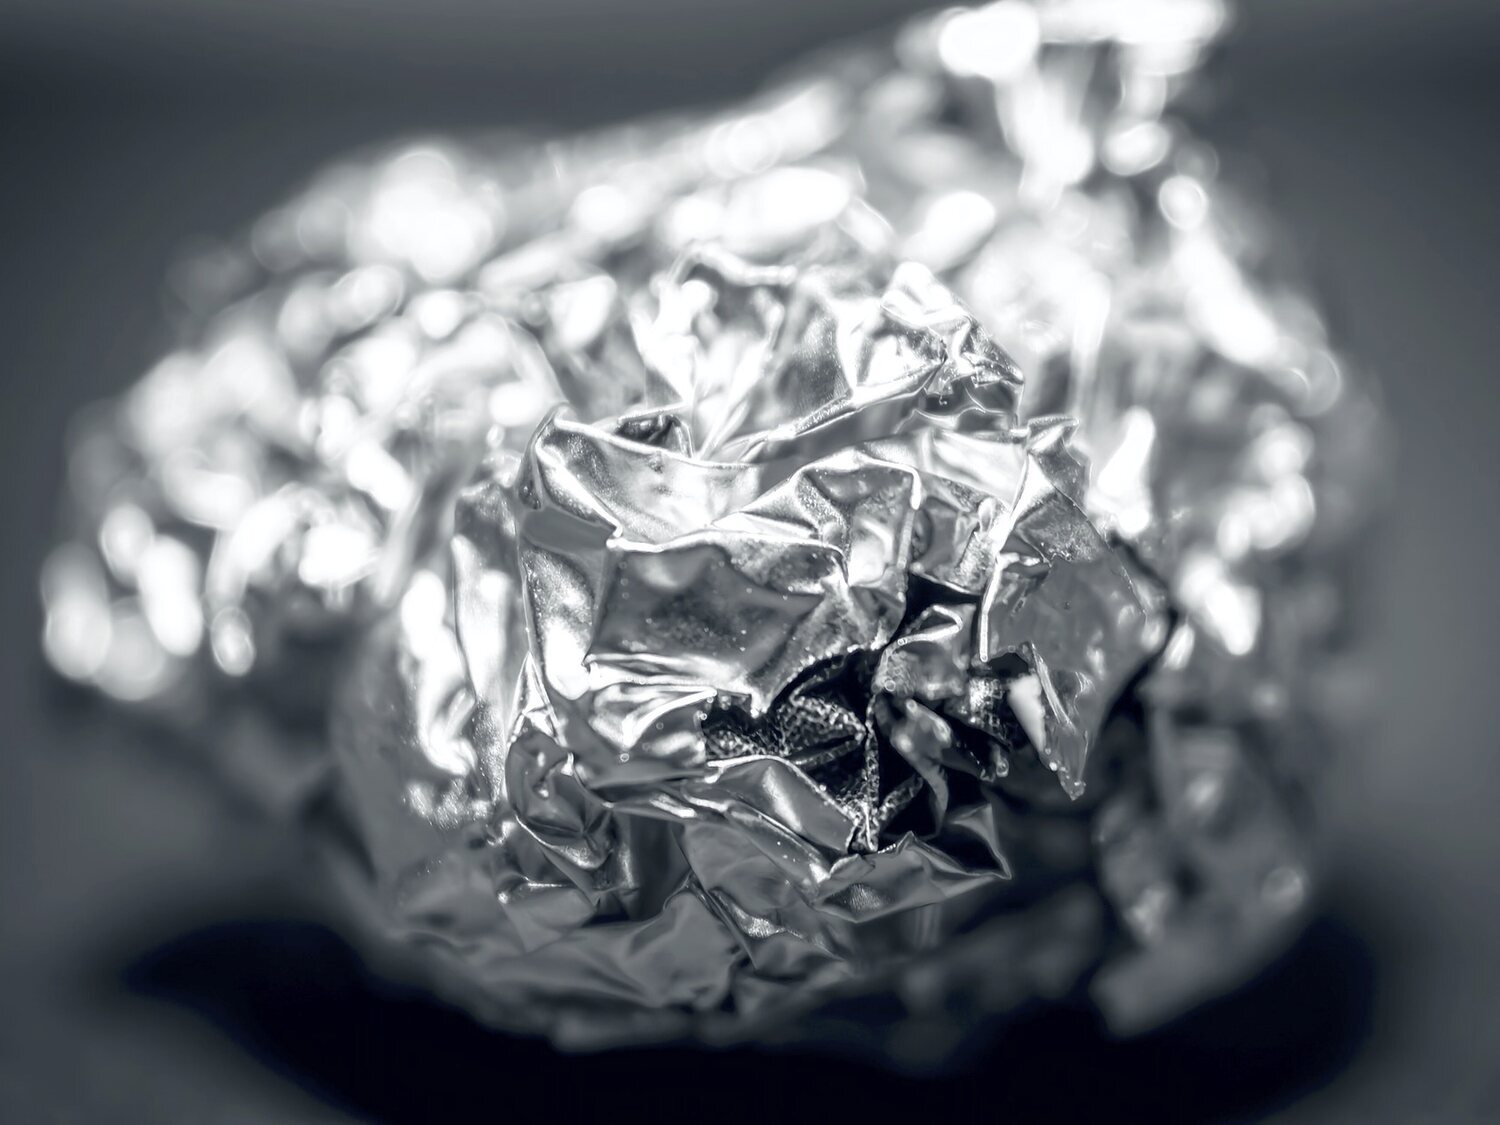 ¿Qué cara del papel de aluminio debemos poner hacia fuera cuando envolvemos alimentos?